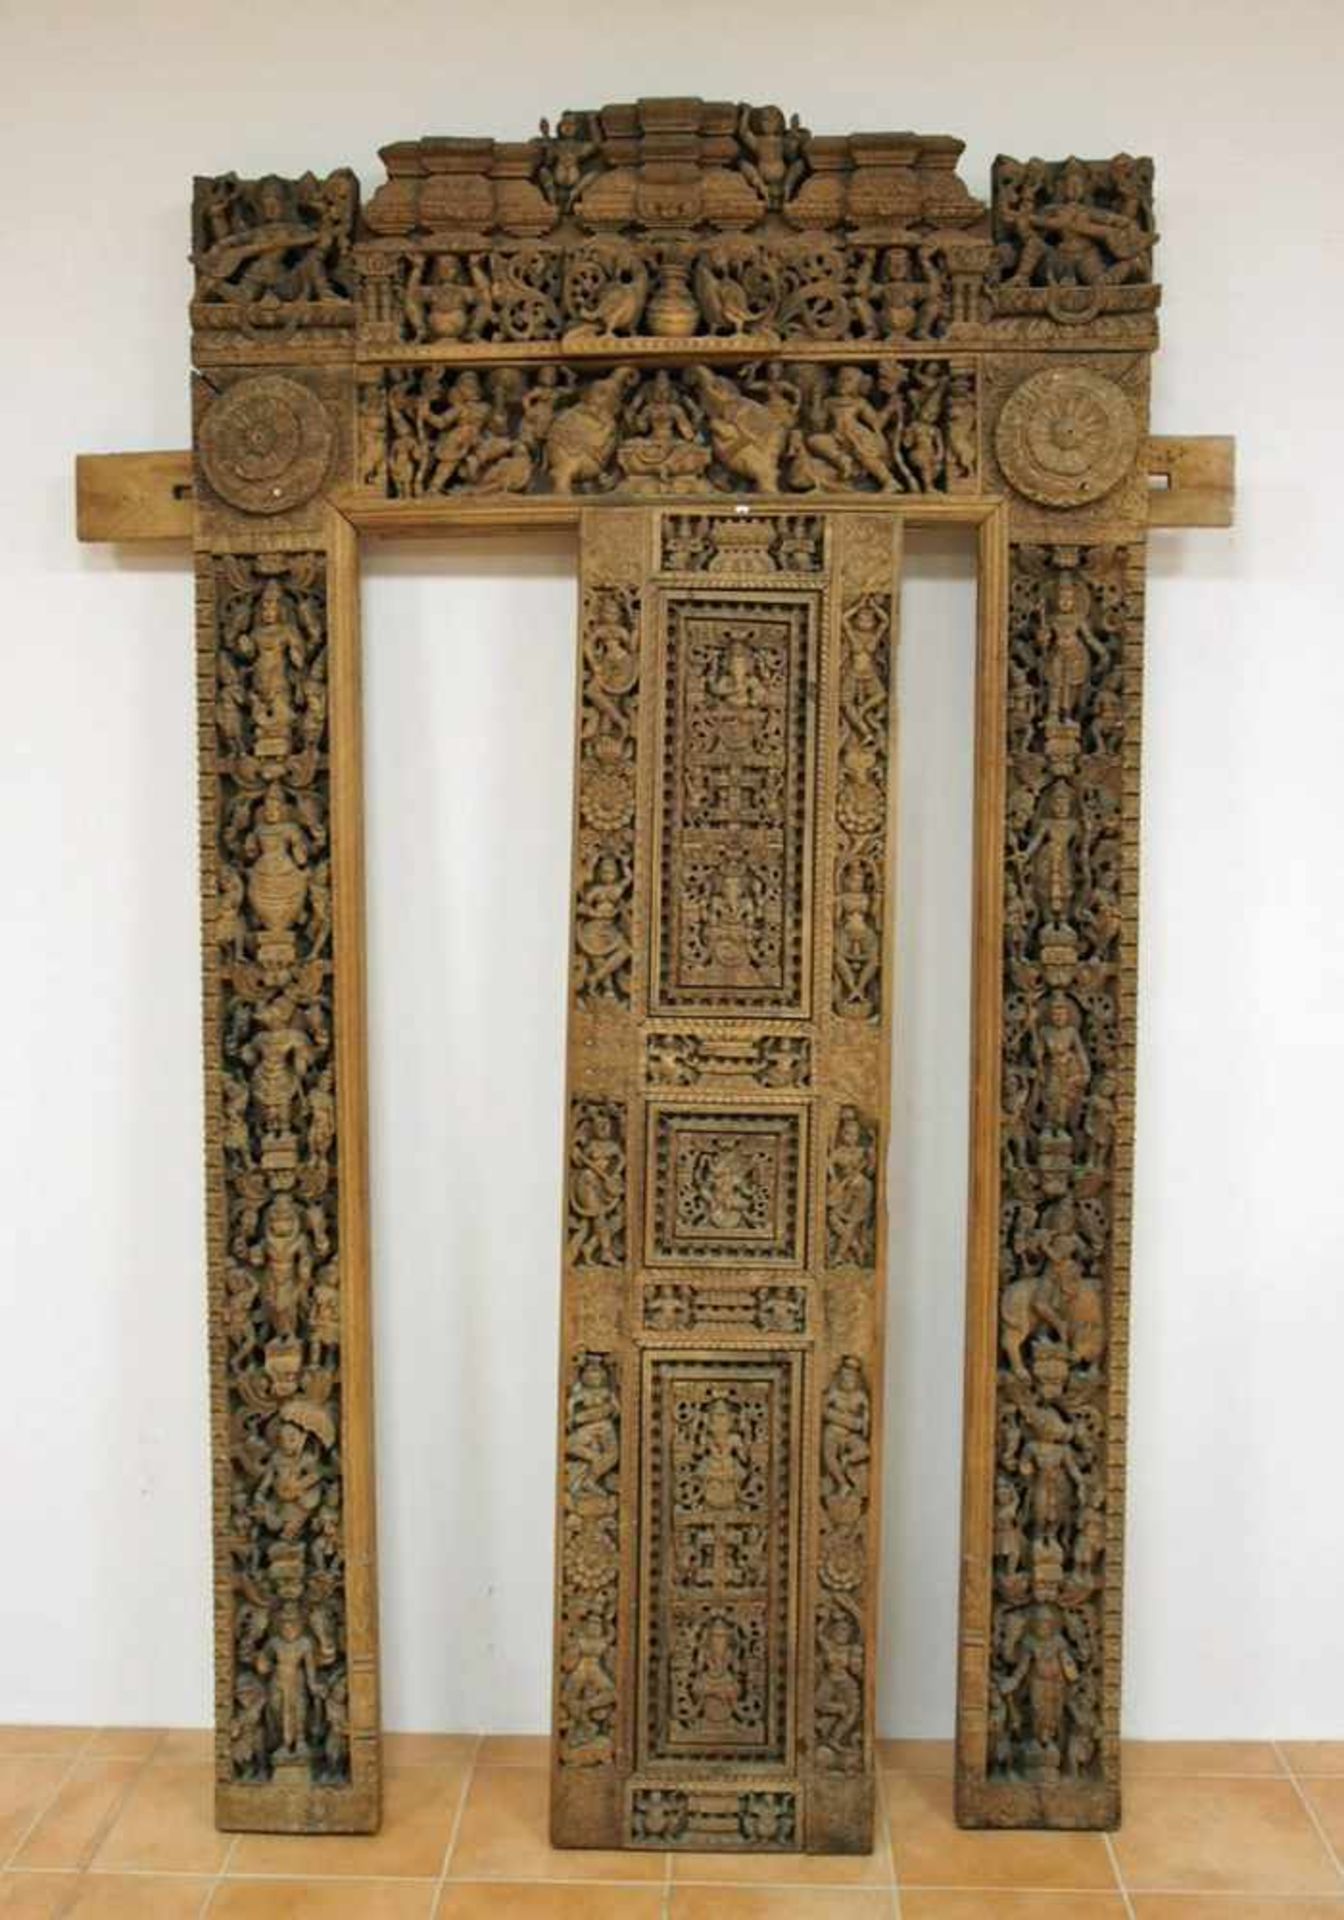 Einfassung einer Tempeltür mit TürblattHolz, reich geschnitzt mit mythologischen Figuren und